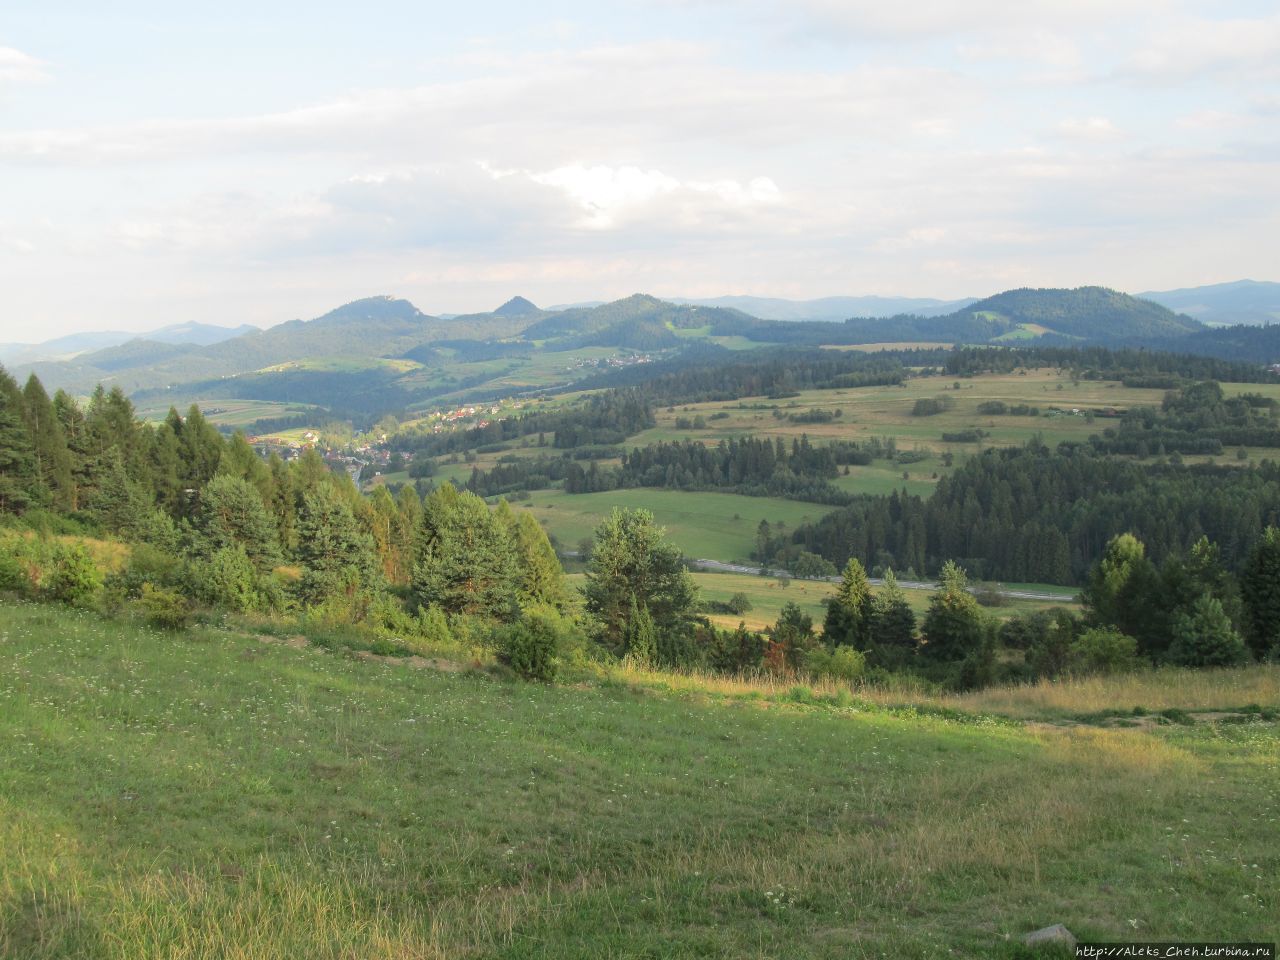 С горы  Вджар  открывается отличный вид на Чорштынское озеро,  окрестные горные массивы – Пеннины, Горце и Татры, а также замки Чорштын и Неджицу. Клюшковце, Польша